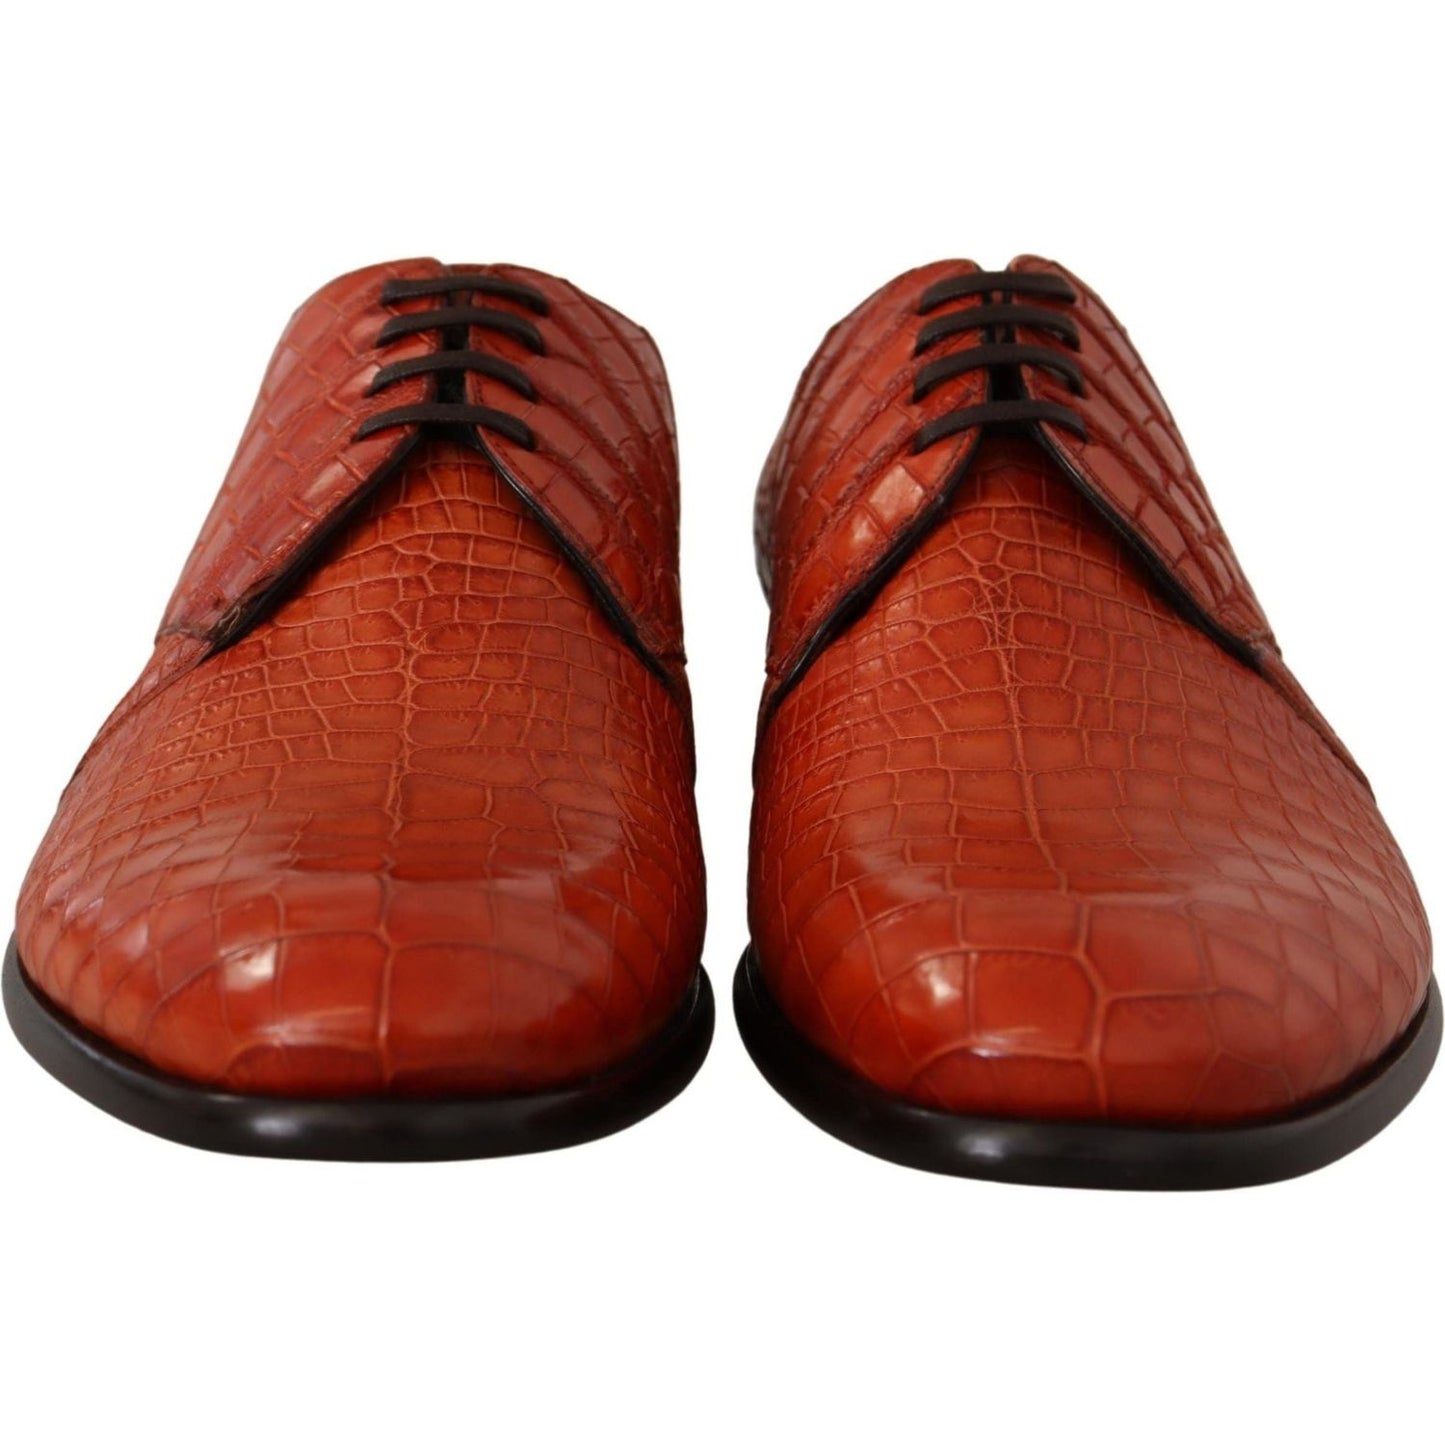 Dolce & Gabbana Exotic Orange Croc Leather Laceup Dress Shoes orange-exotic-leather-dress-derby-shoes-1 IMG_2133-scaled-e495badd-0ca.jpg